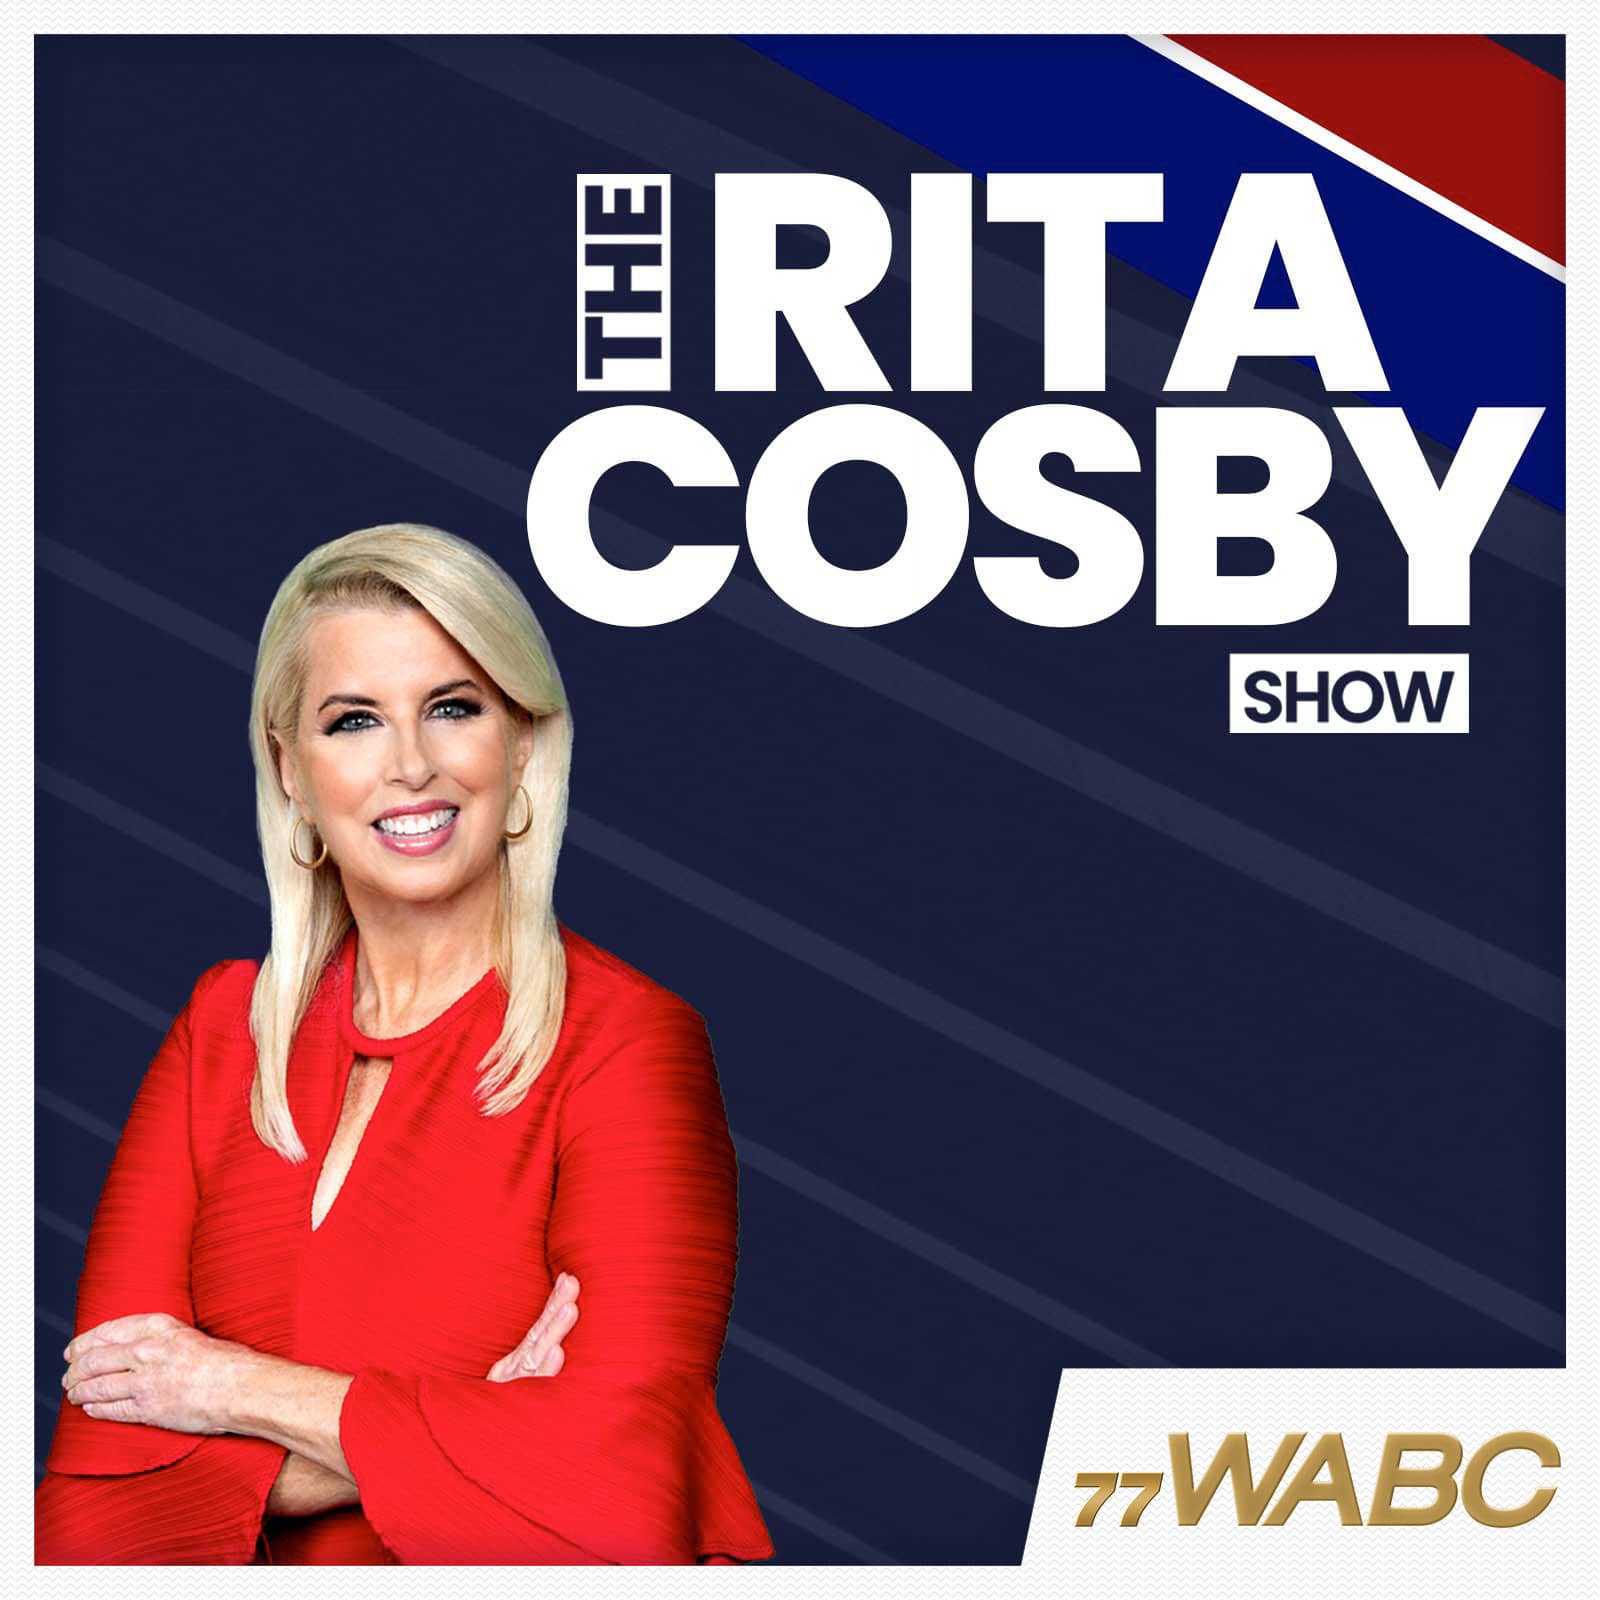 rita-cosby-podcast-new-logo707180